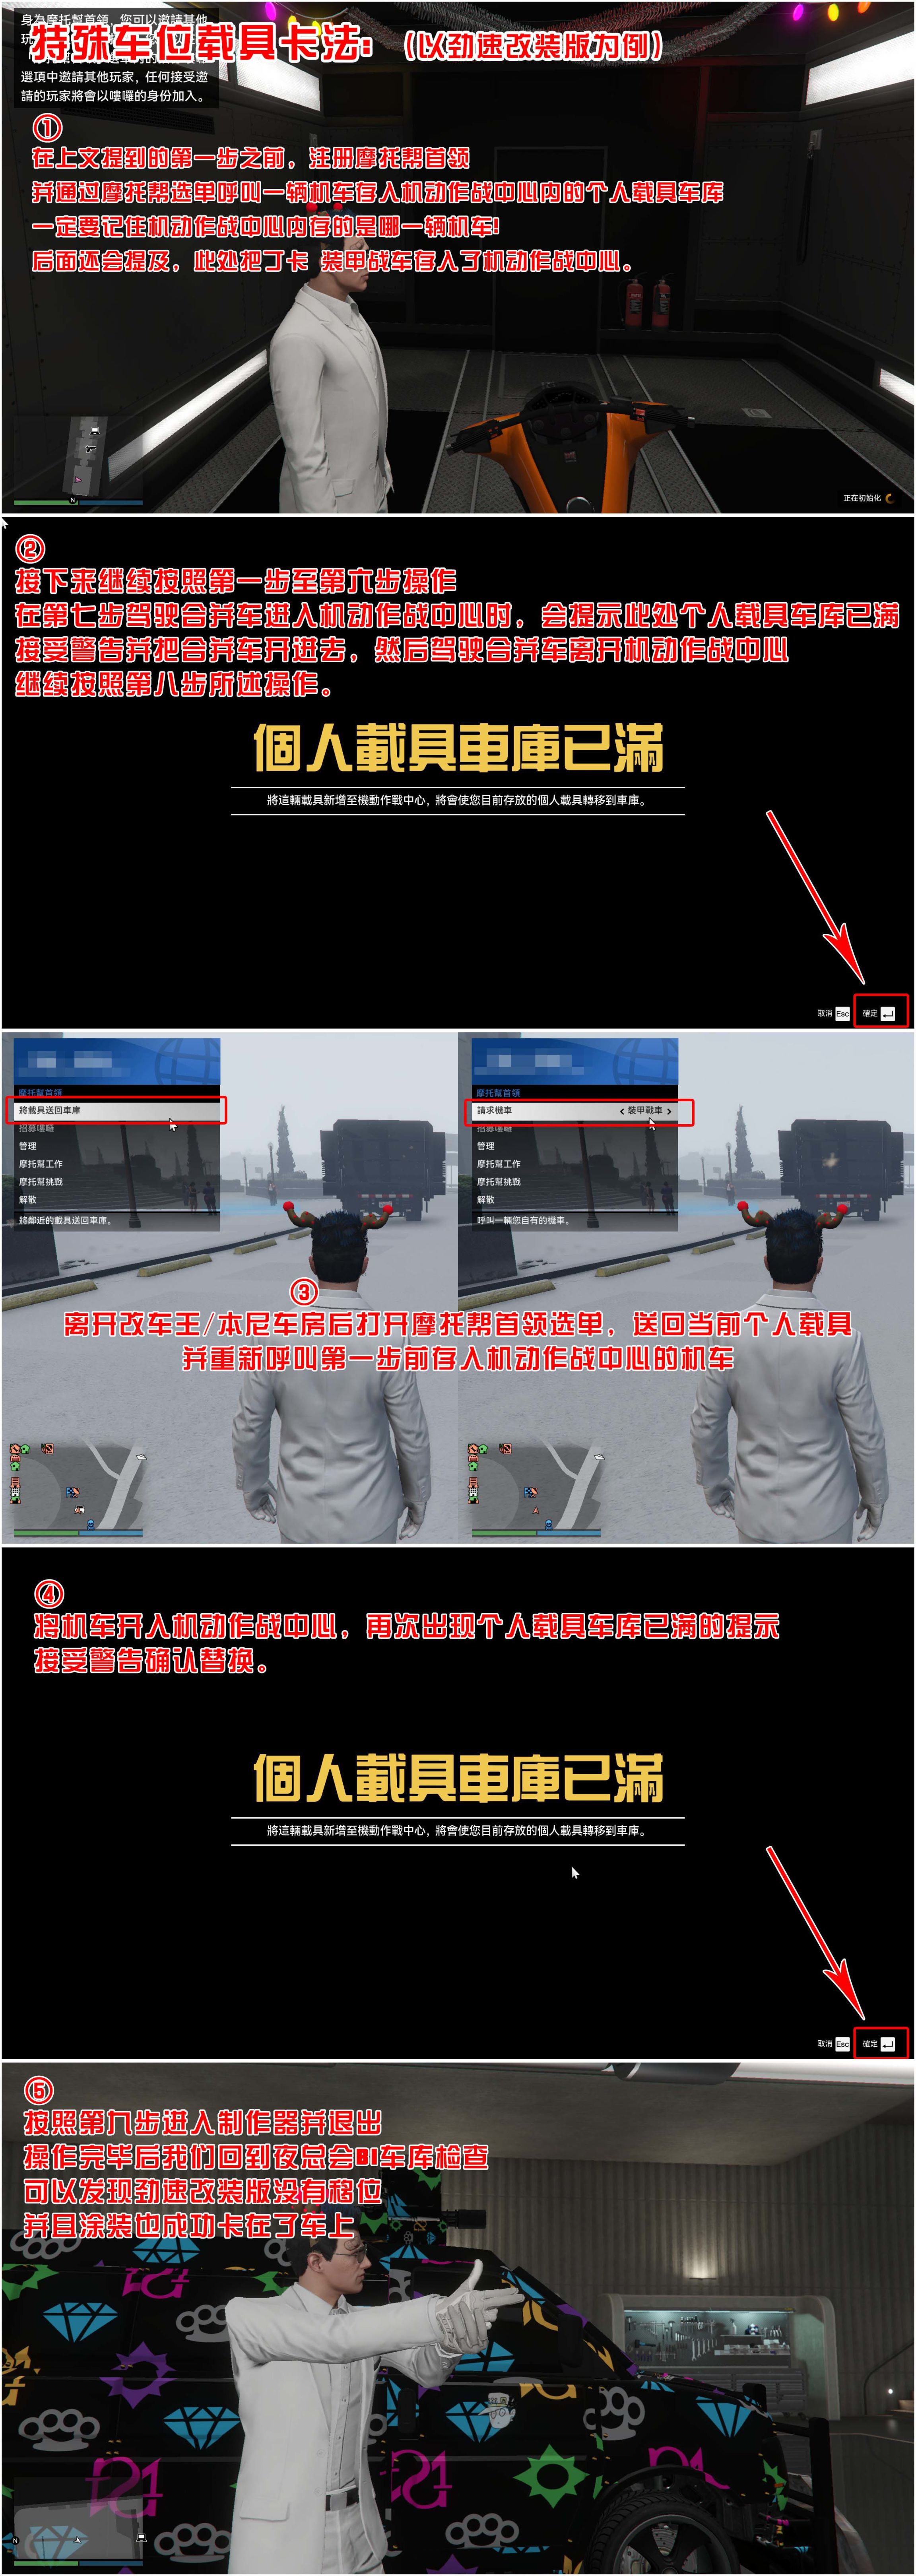 【侠盗猎车手5】GTA 在线模式攻略：获取载具隐藏涂装&复制车&变造外贸载具-第10张